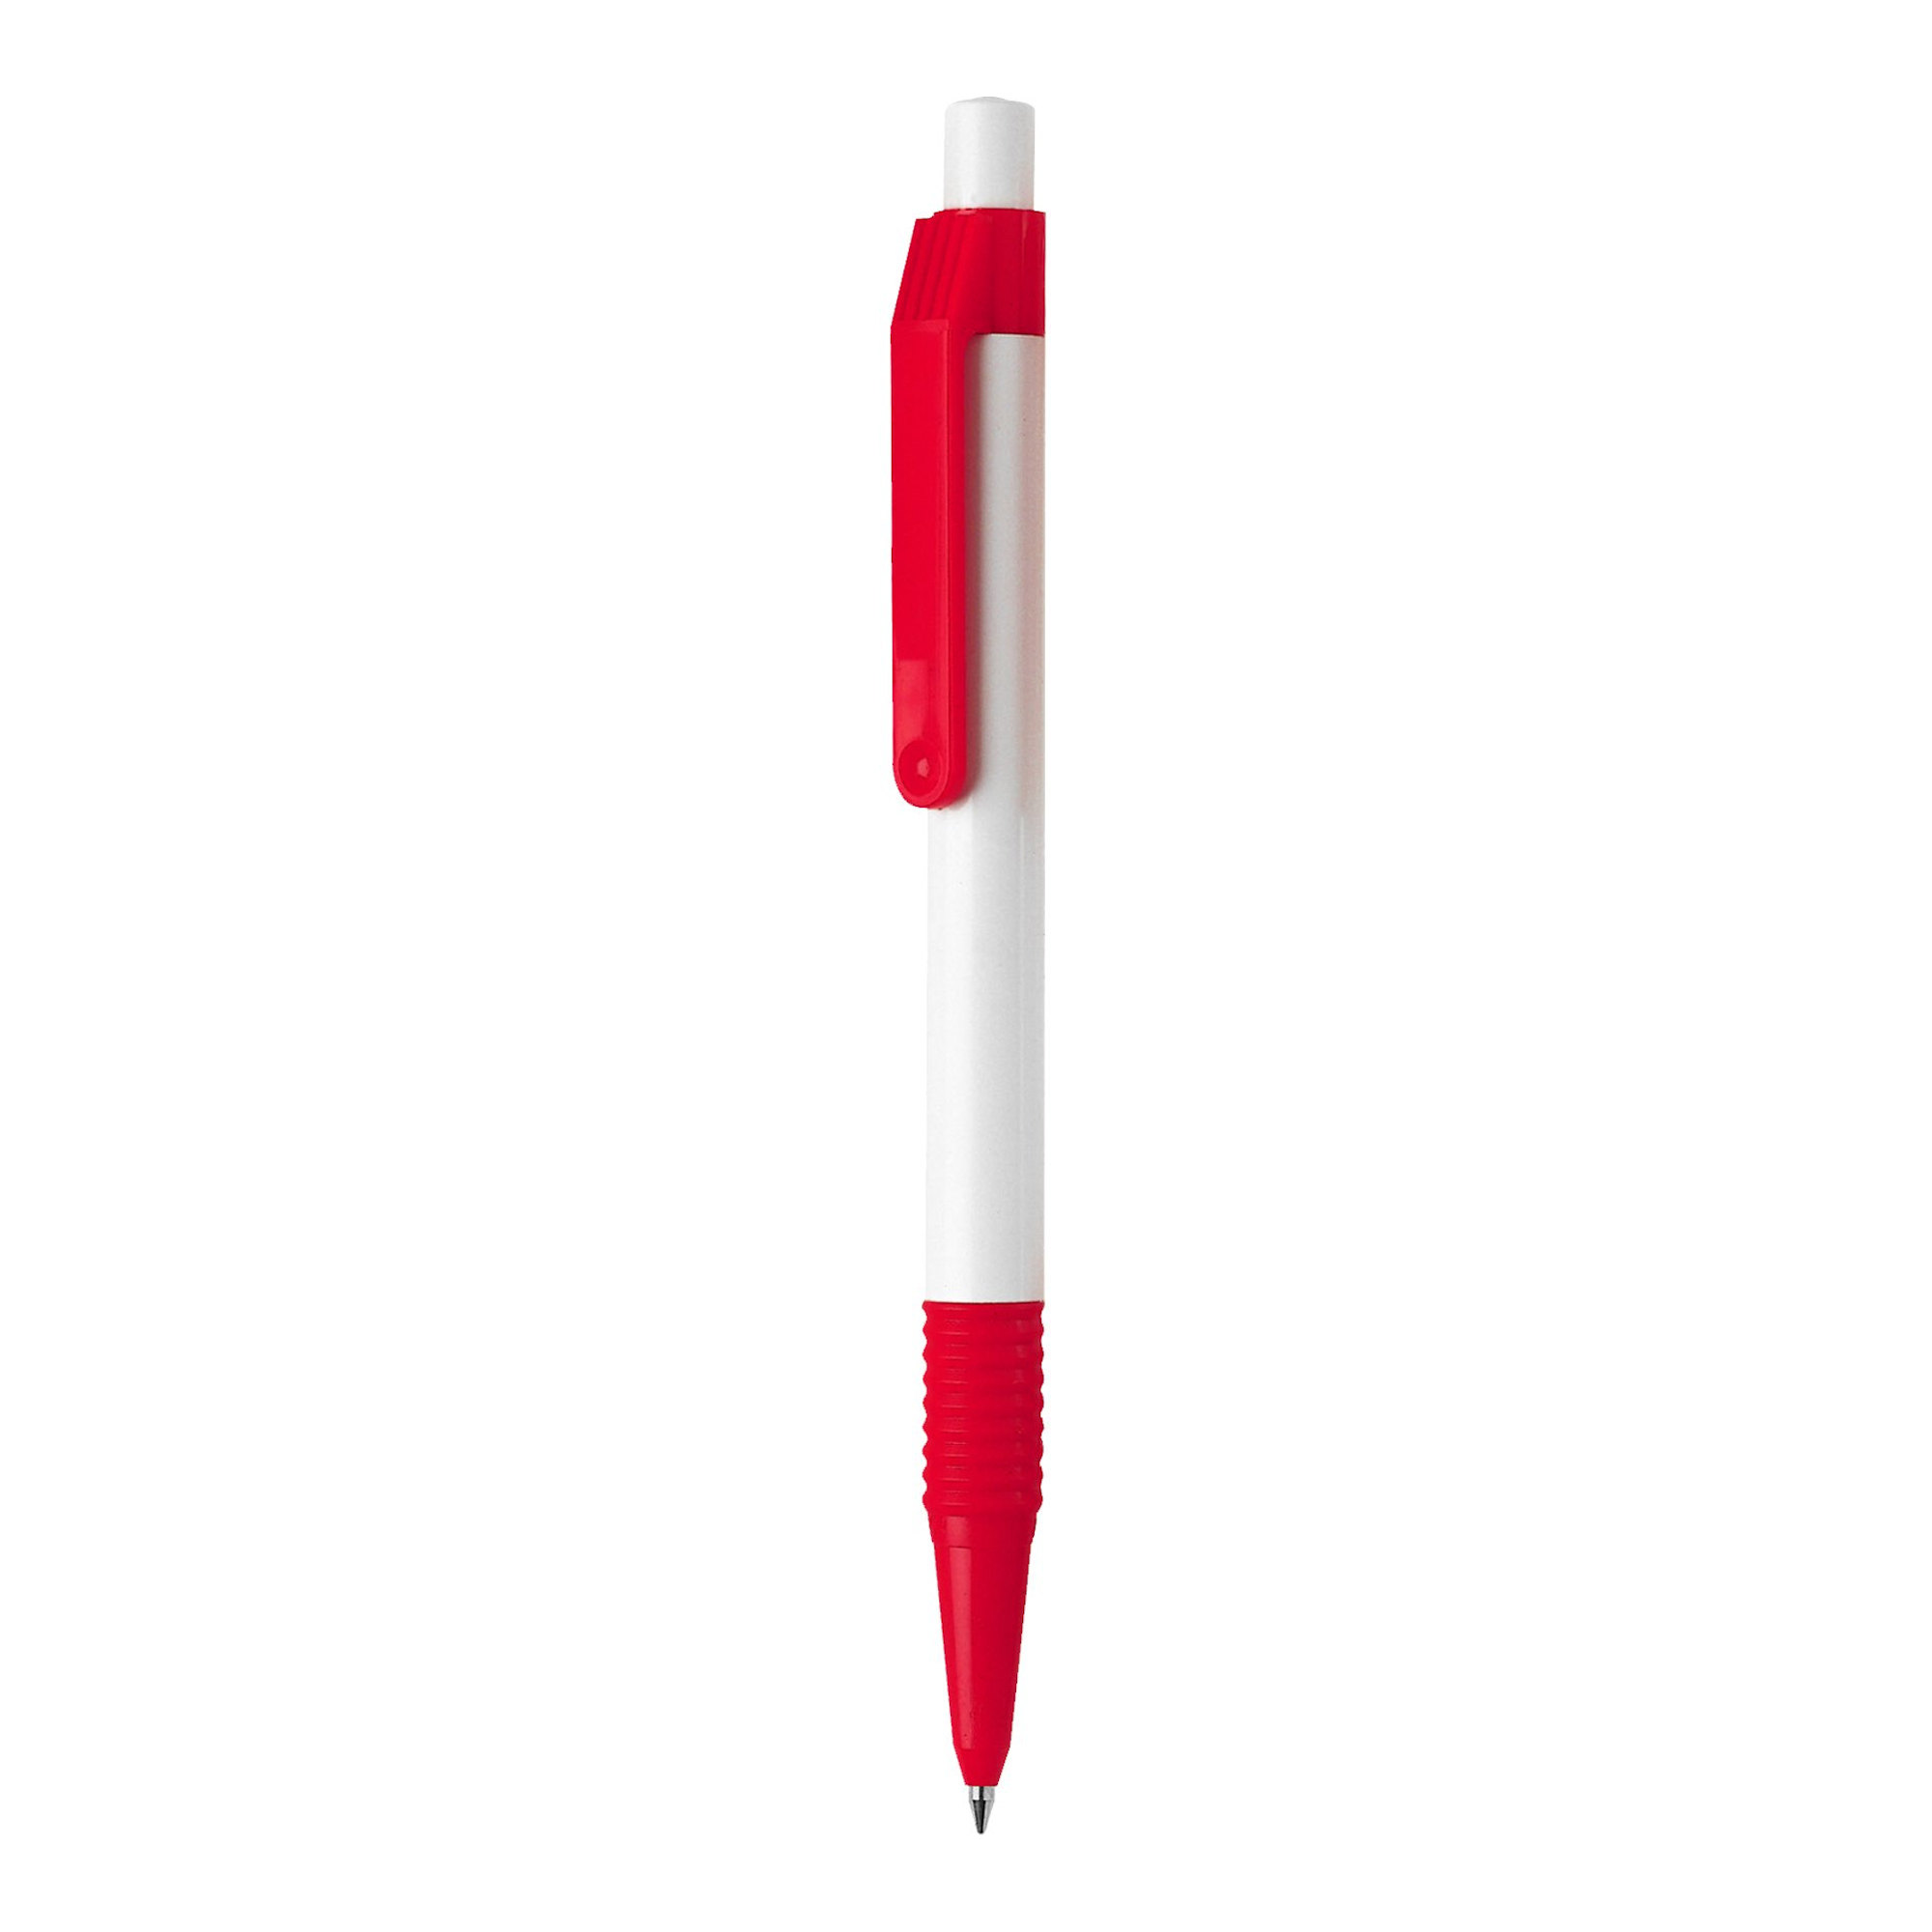 Bolígrafo Sport
Color rojo y blanco